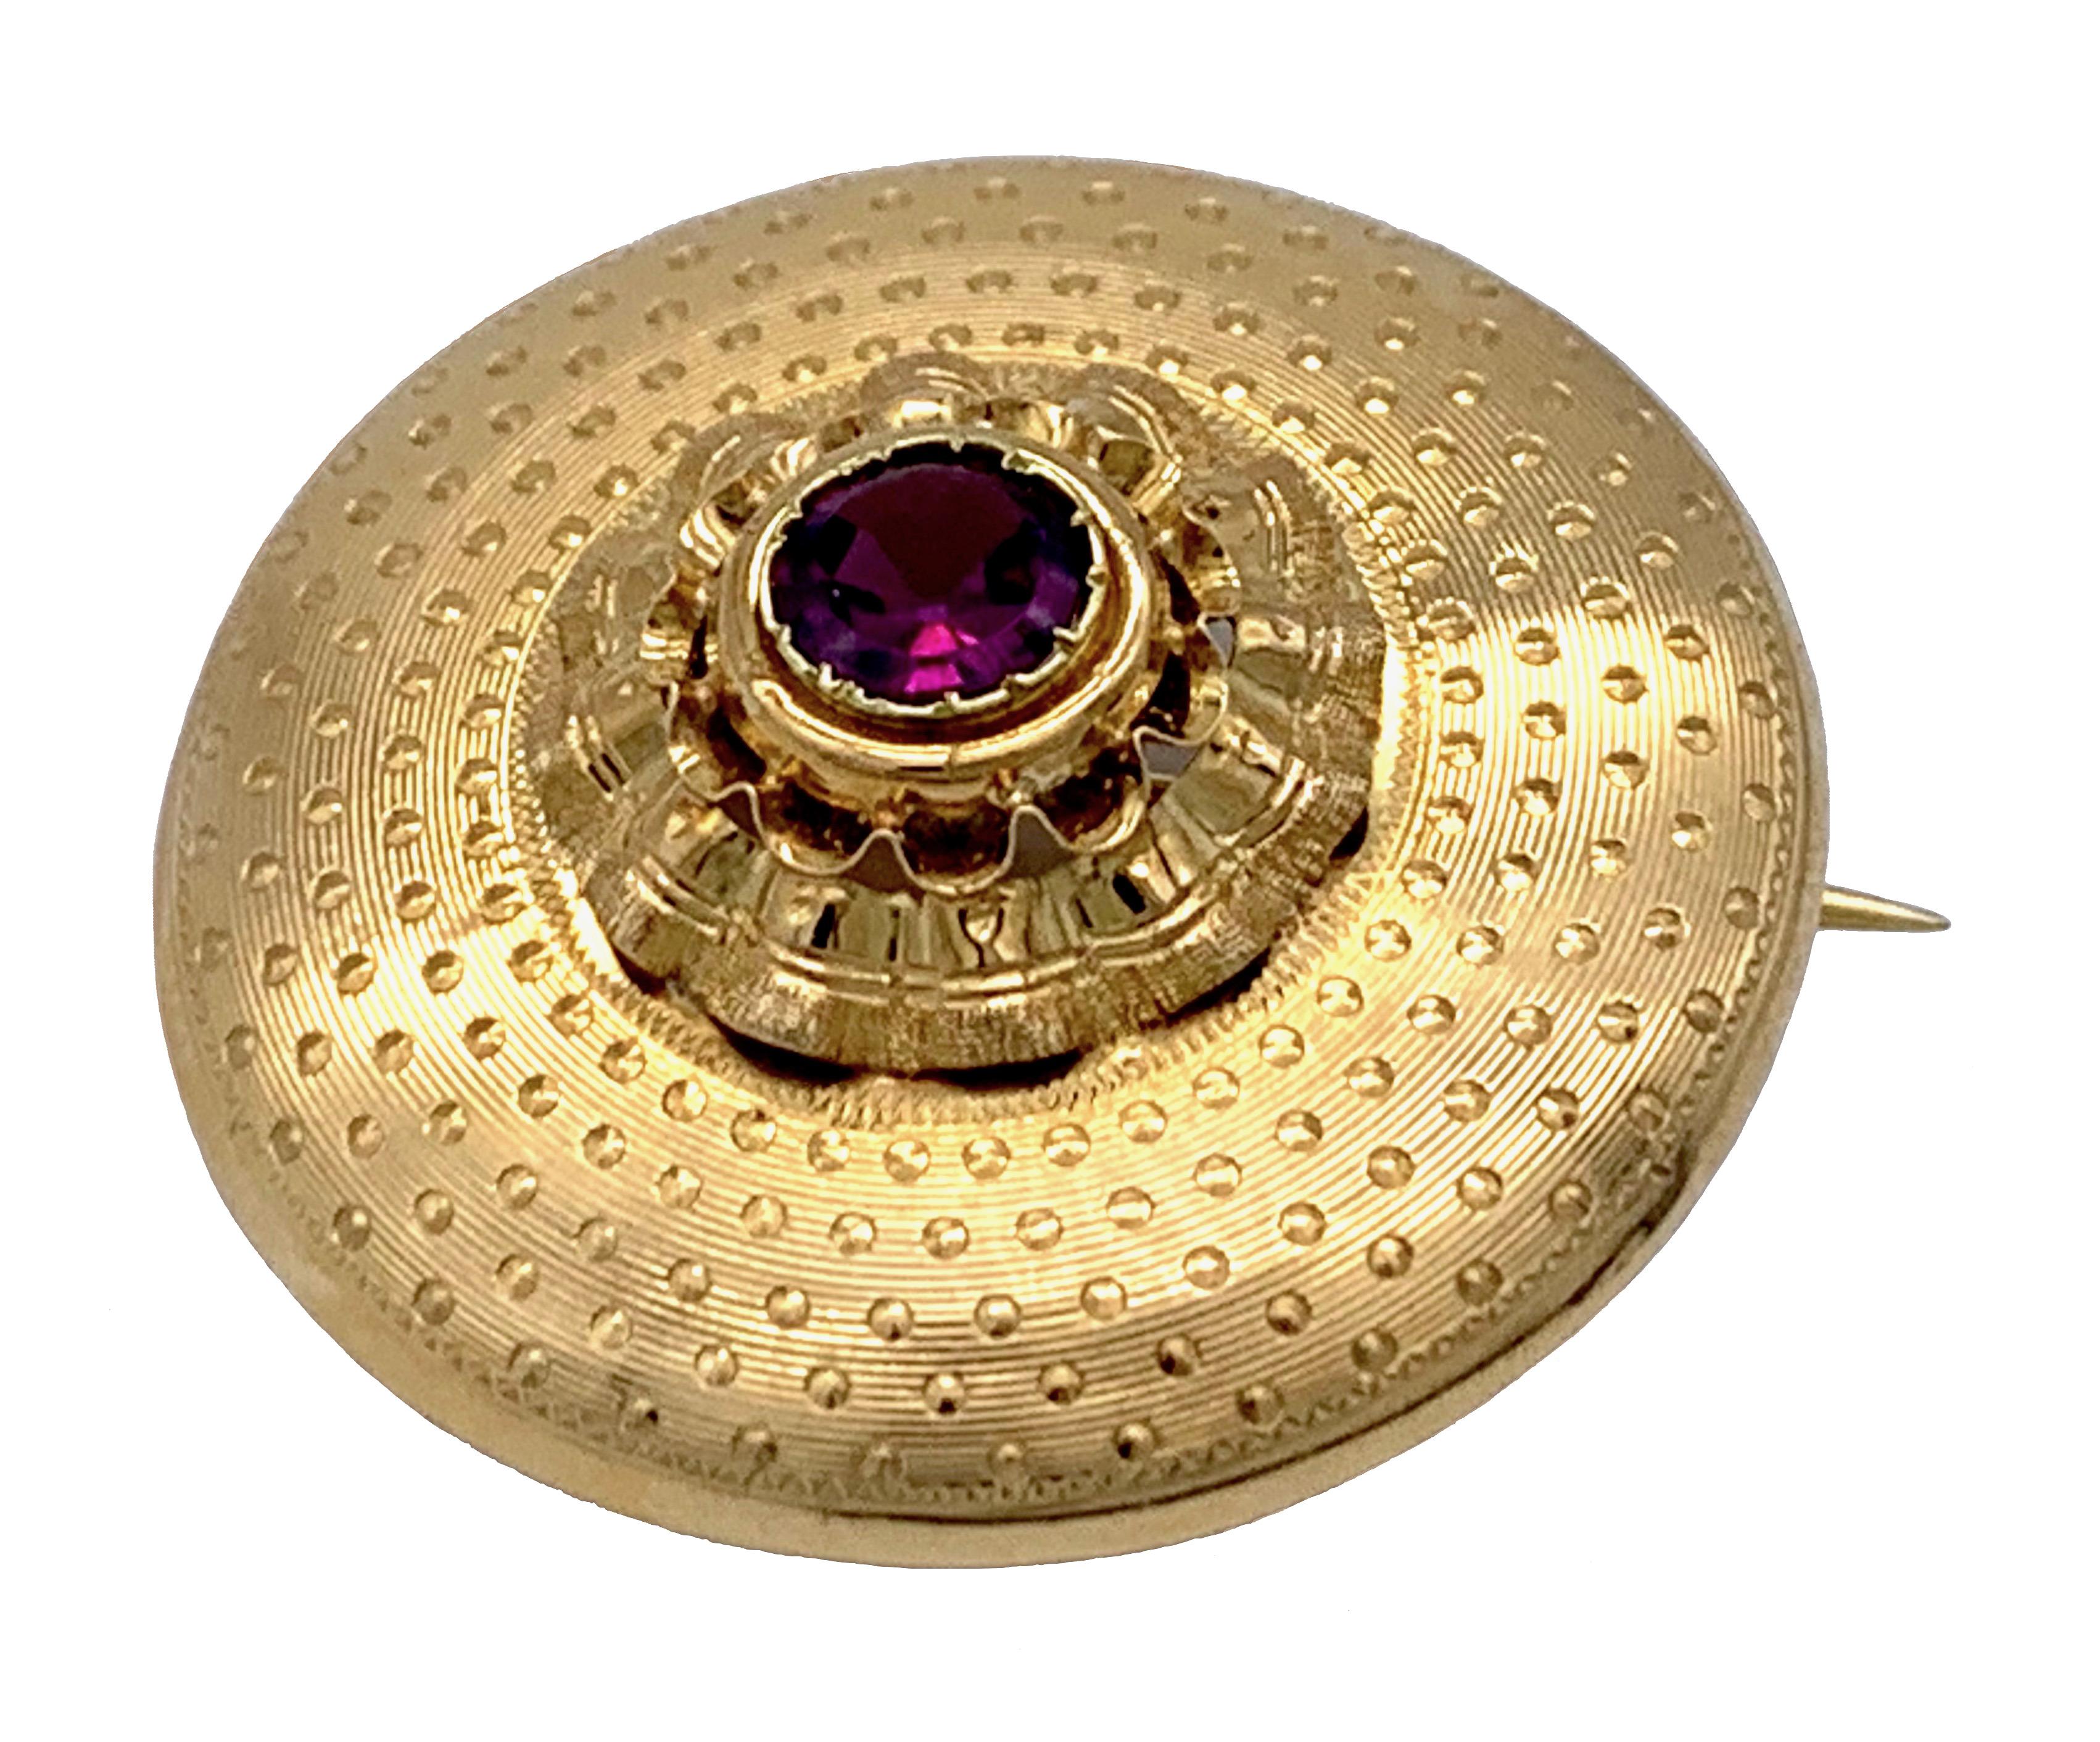 Diese prächtige Zielfibel ist in einem wirklich wunderbaren Zustand und wurde von einem französischen Goldschmiedemeister um 1865 aus 18 Karat Gelbgold gefertigt. Sie ist mit einer französischen Herstellermarke in einer Raute gekennzeichnet, wobei